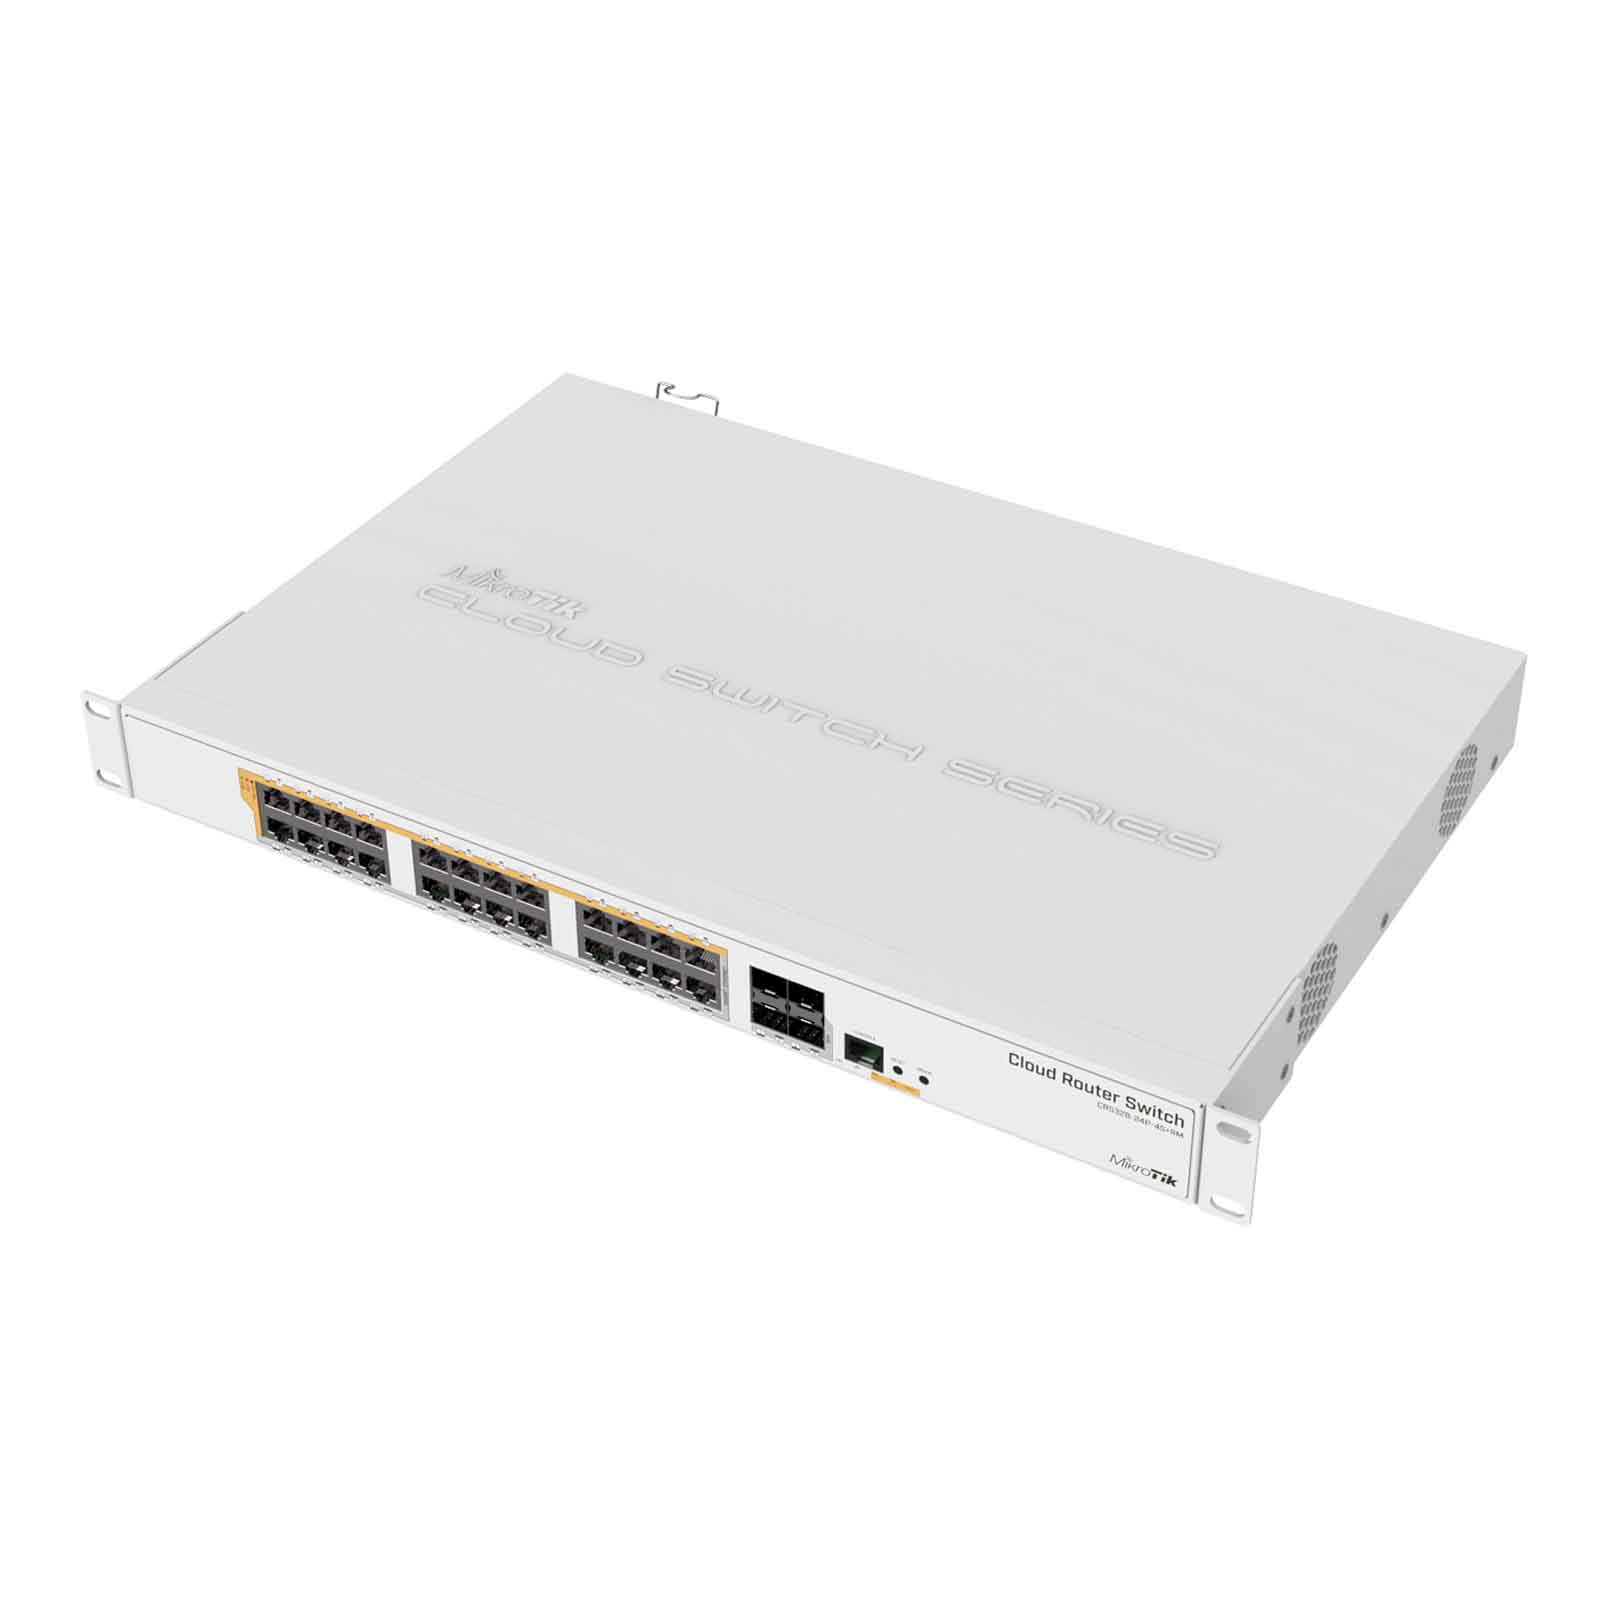 MikroTik Cloud Router Switch CRS328-24P-4S+RM